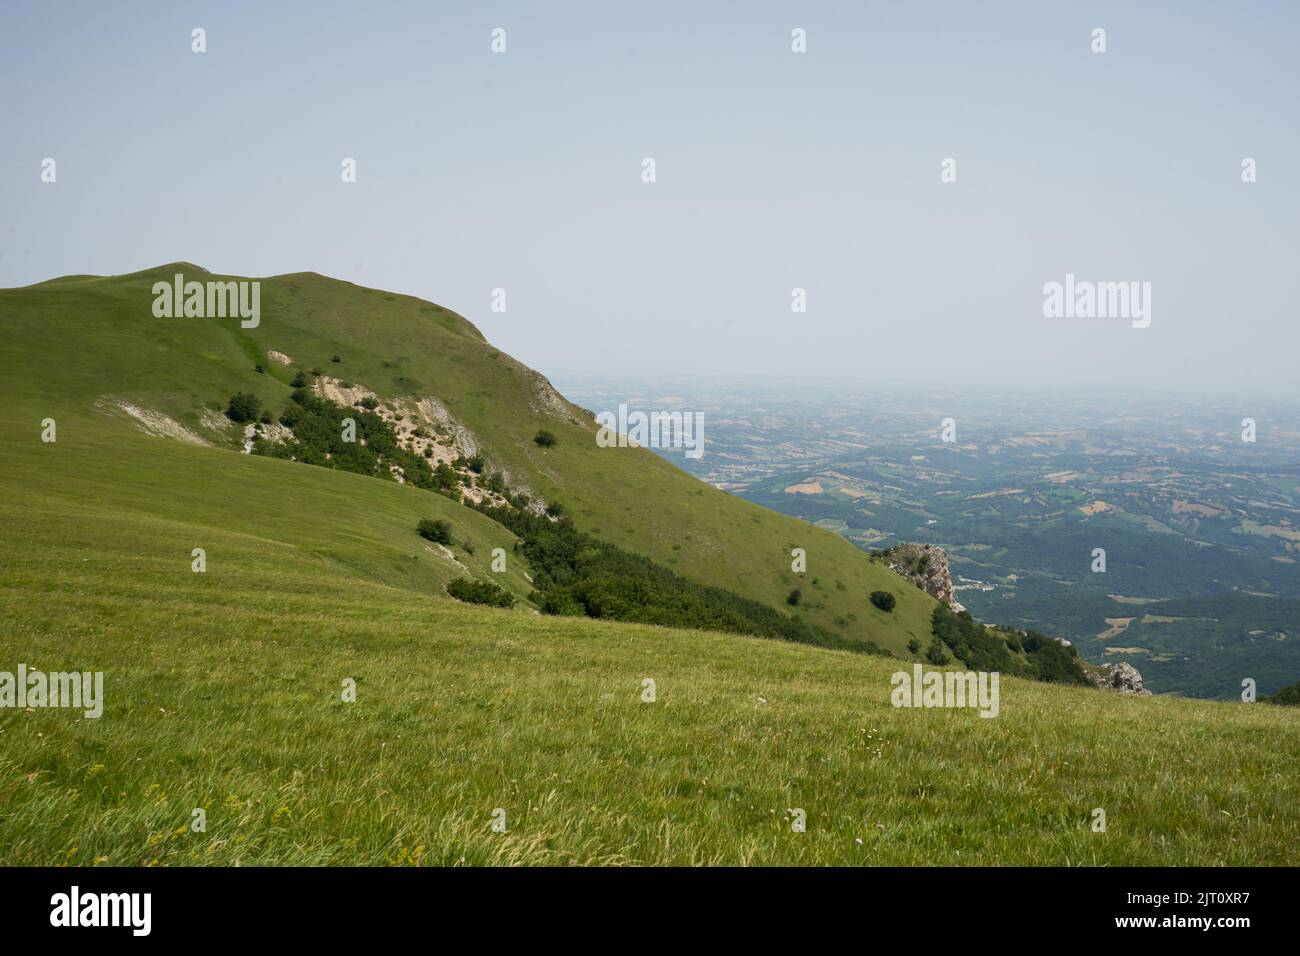 Berglandschaft piani di Ragnolo, Blick in die Ebene zur Adria, Nationalpark Monti Sibillini, Sibillinsche Berge, Marken, Italien Foto Stock